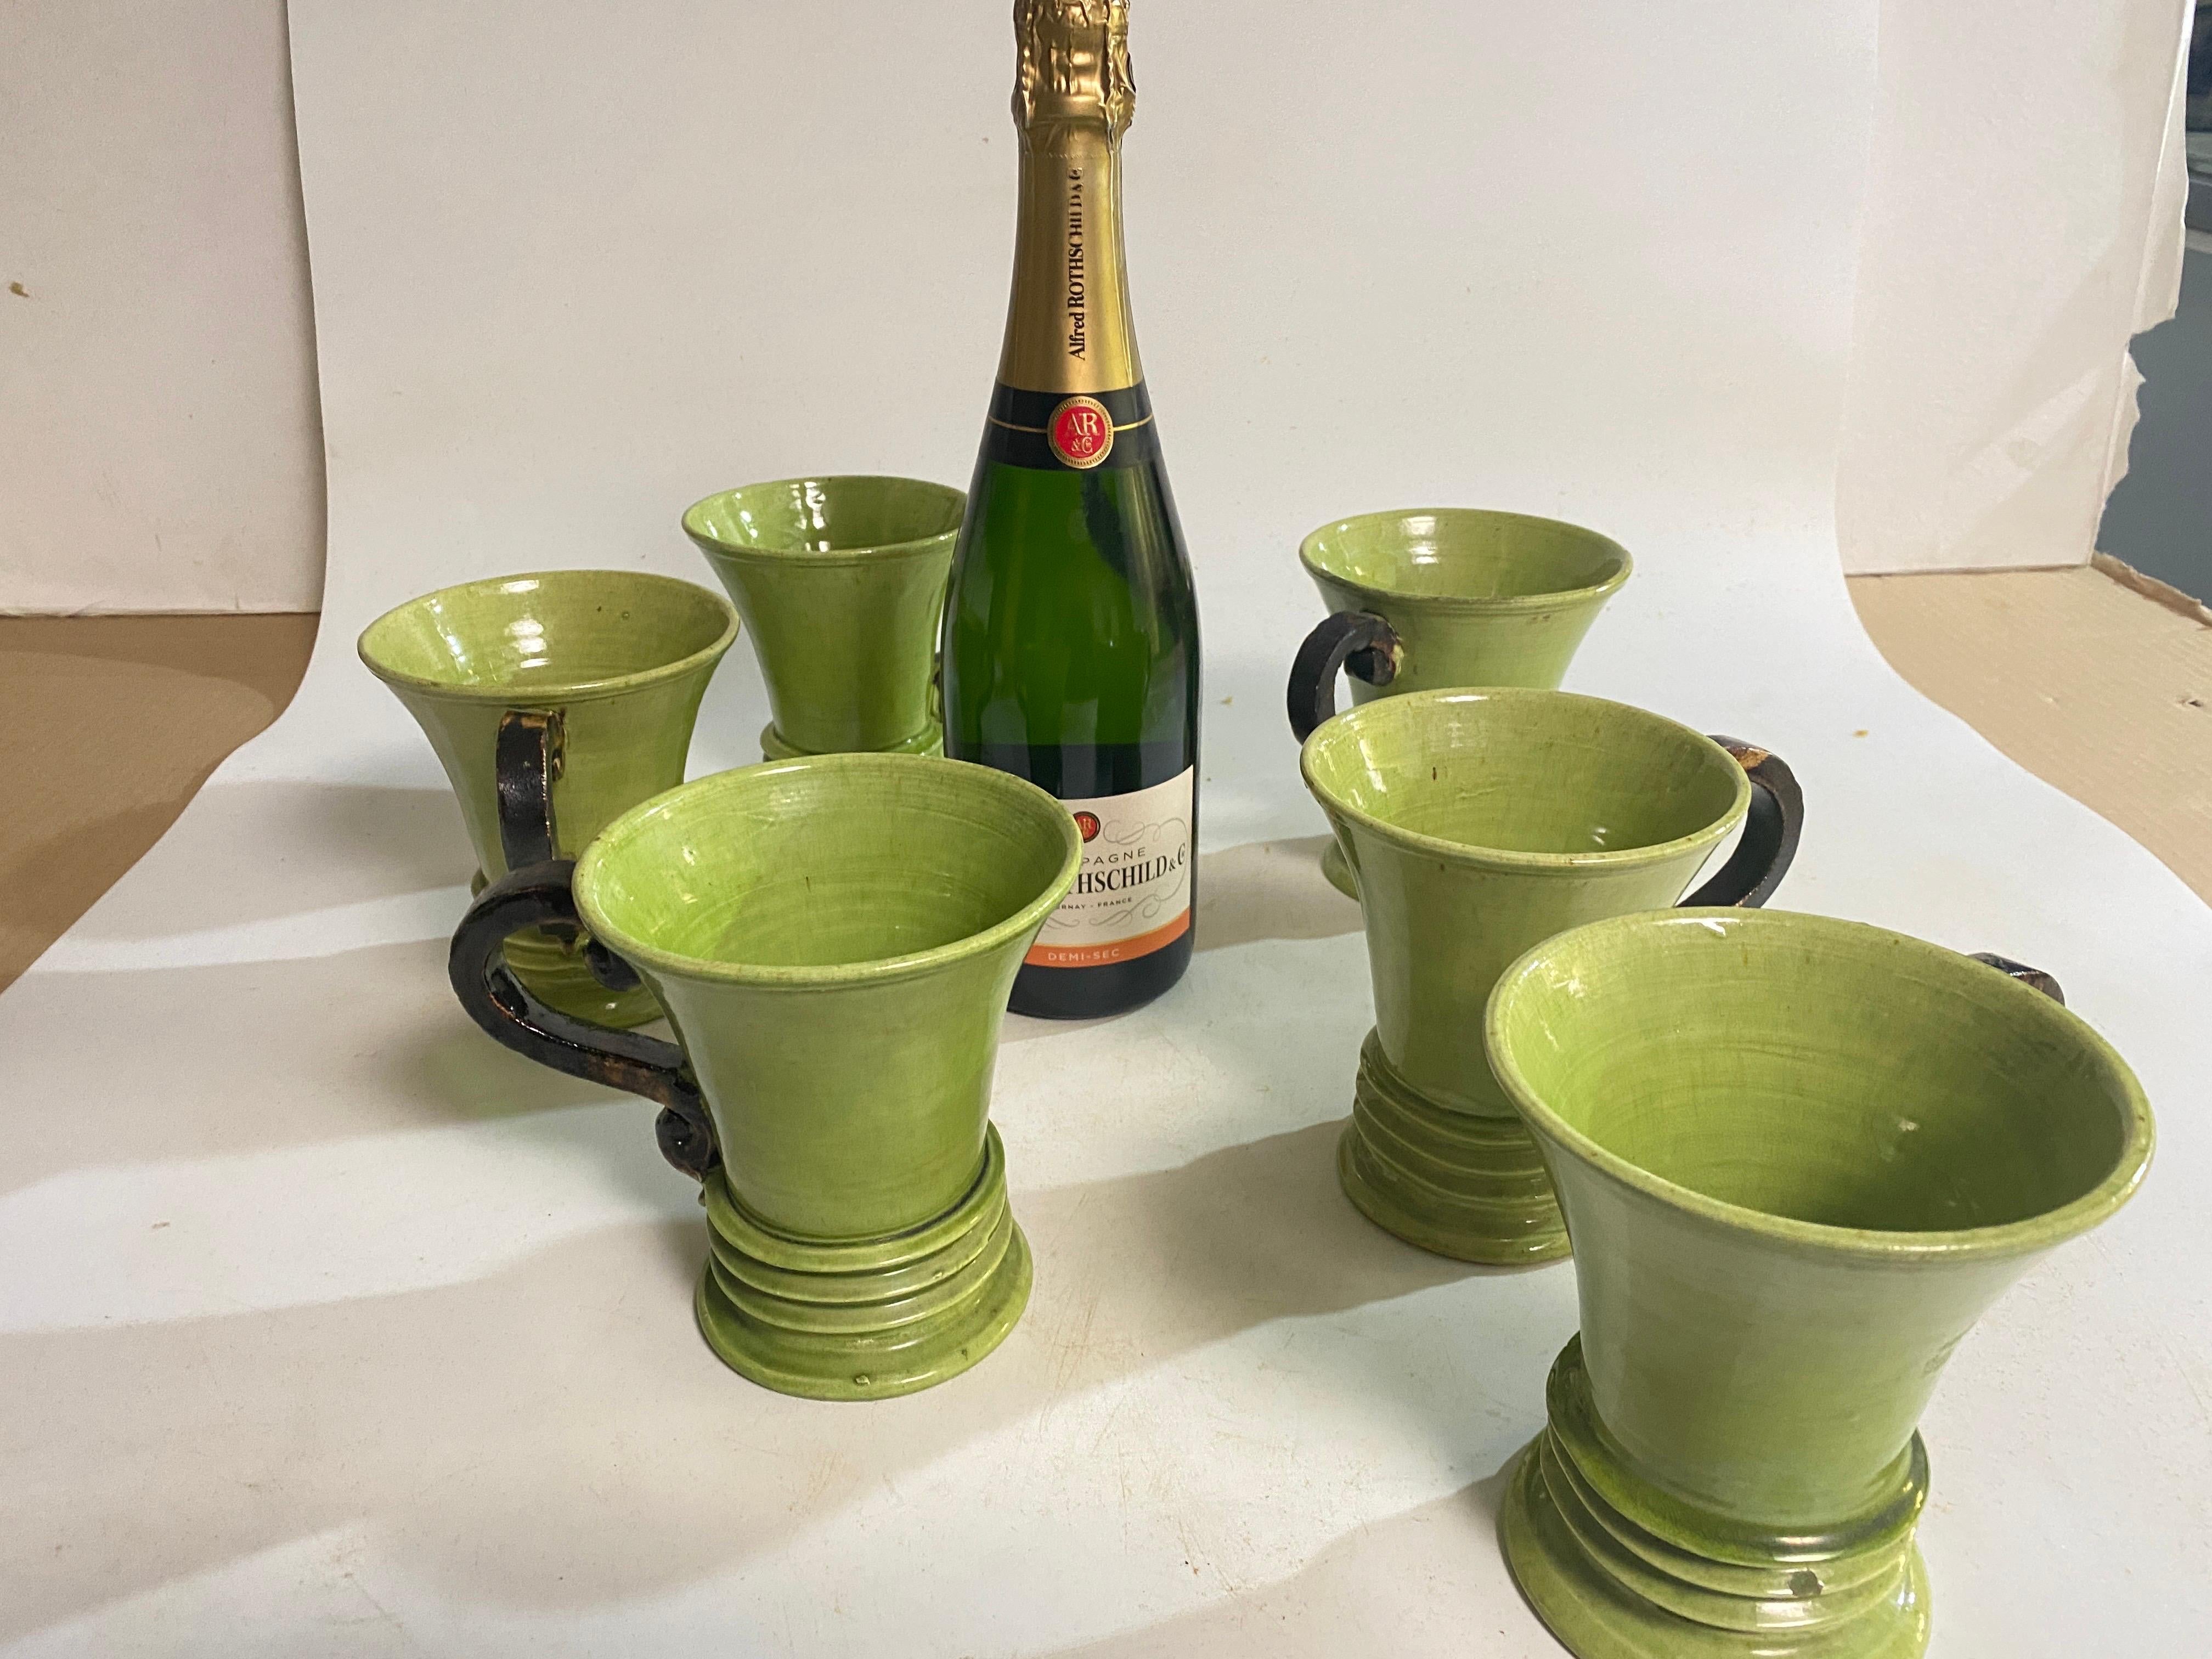 Ensemble de 6 tasses en céramique, faites à la main en France vers 1970.
Les anses des gobelets sont de couleur brune et les gobelets sont de couleur noire.  Vert Couleur.